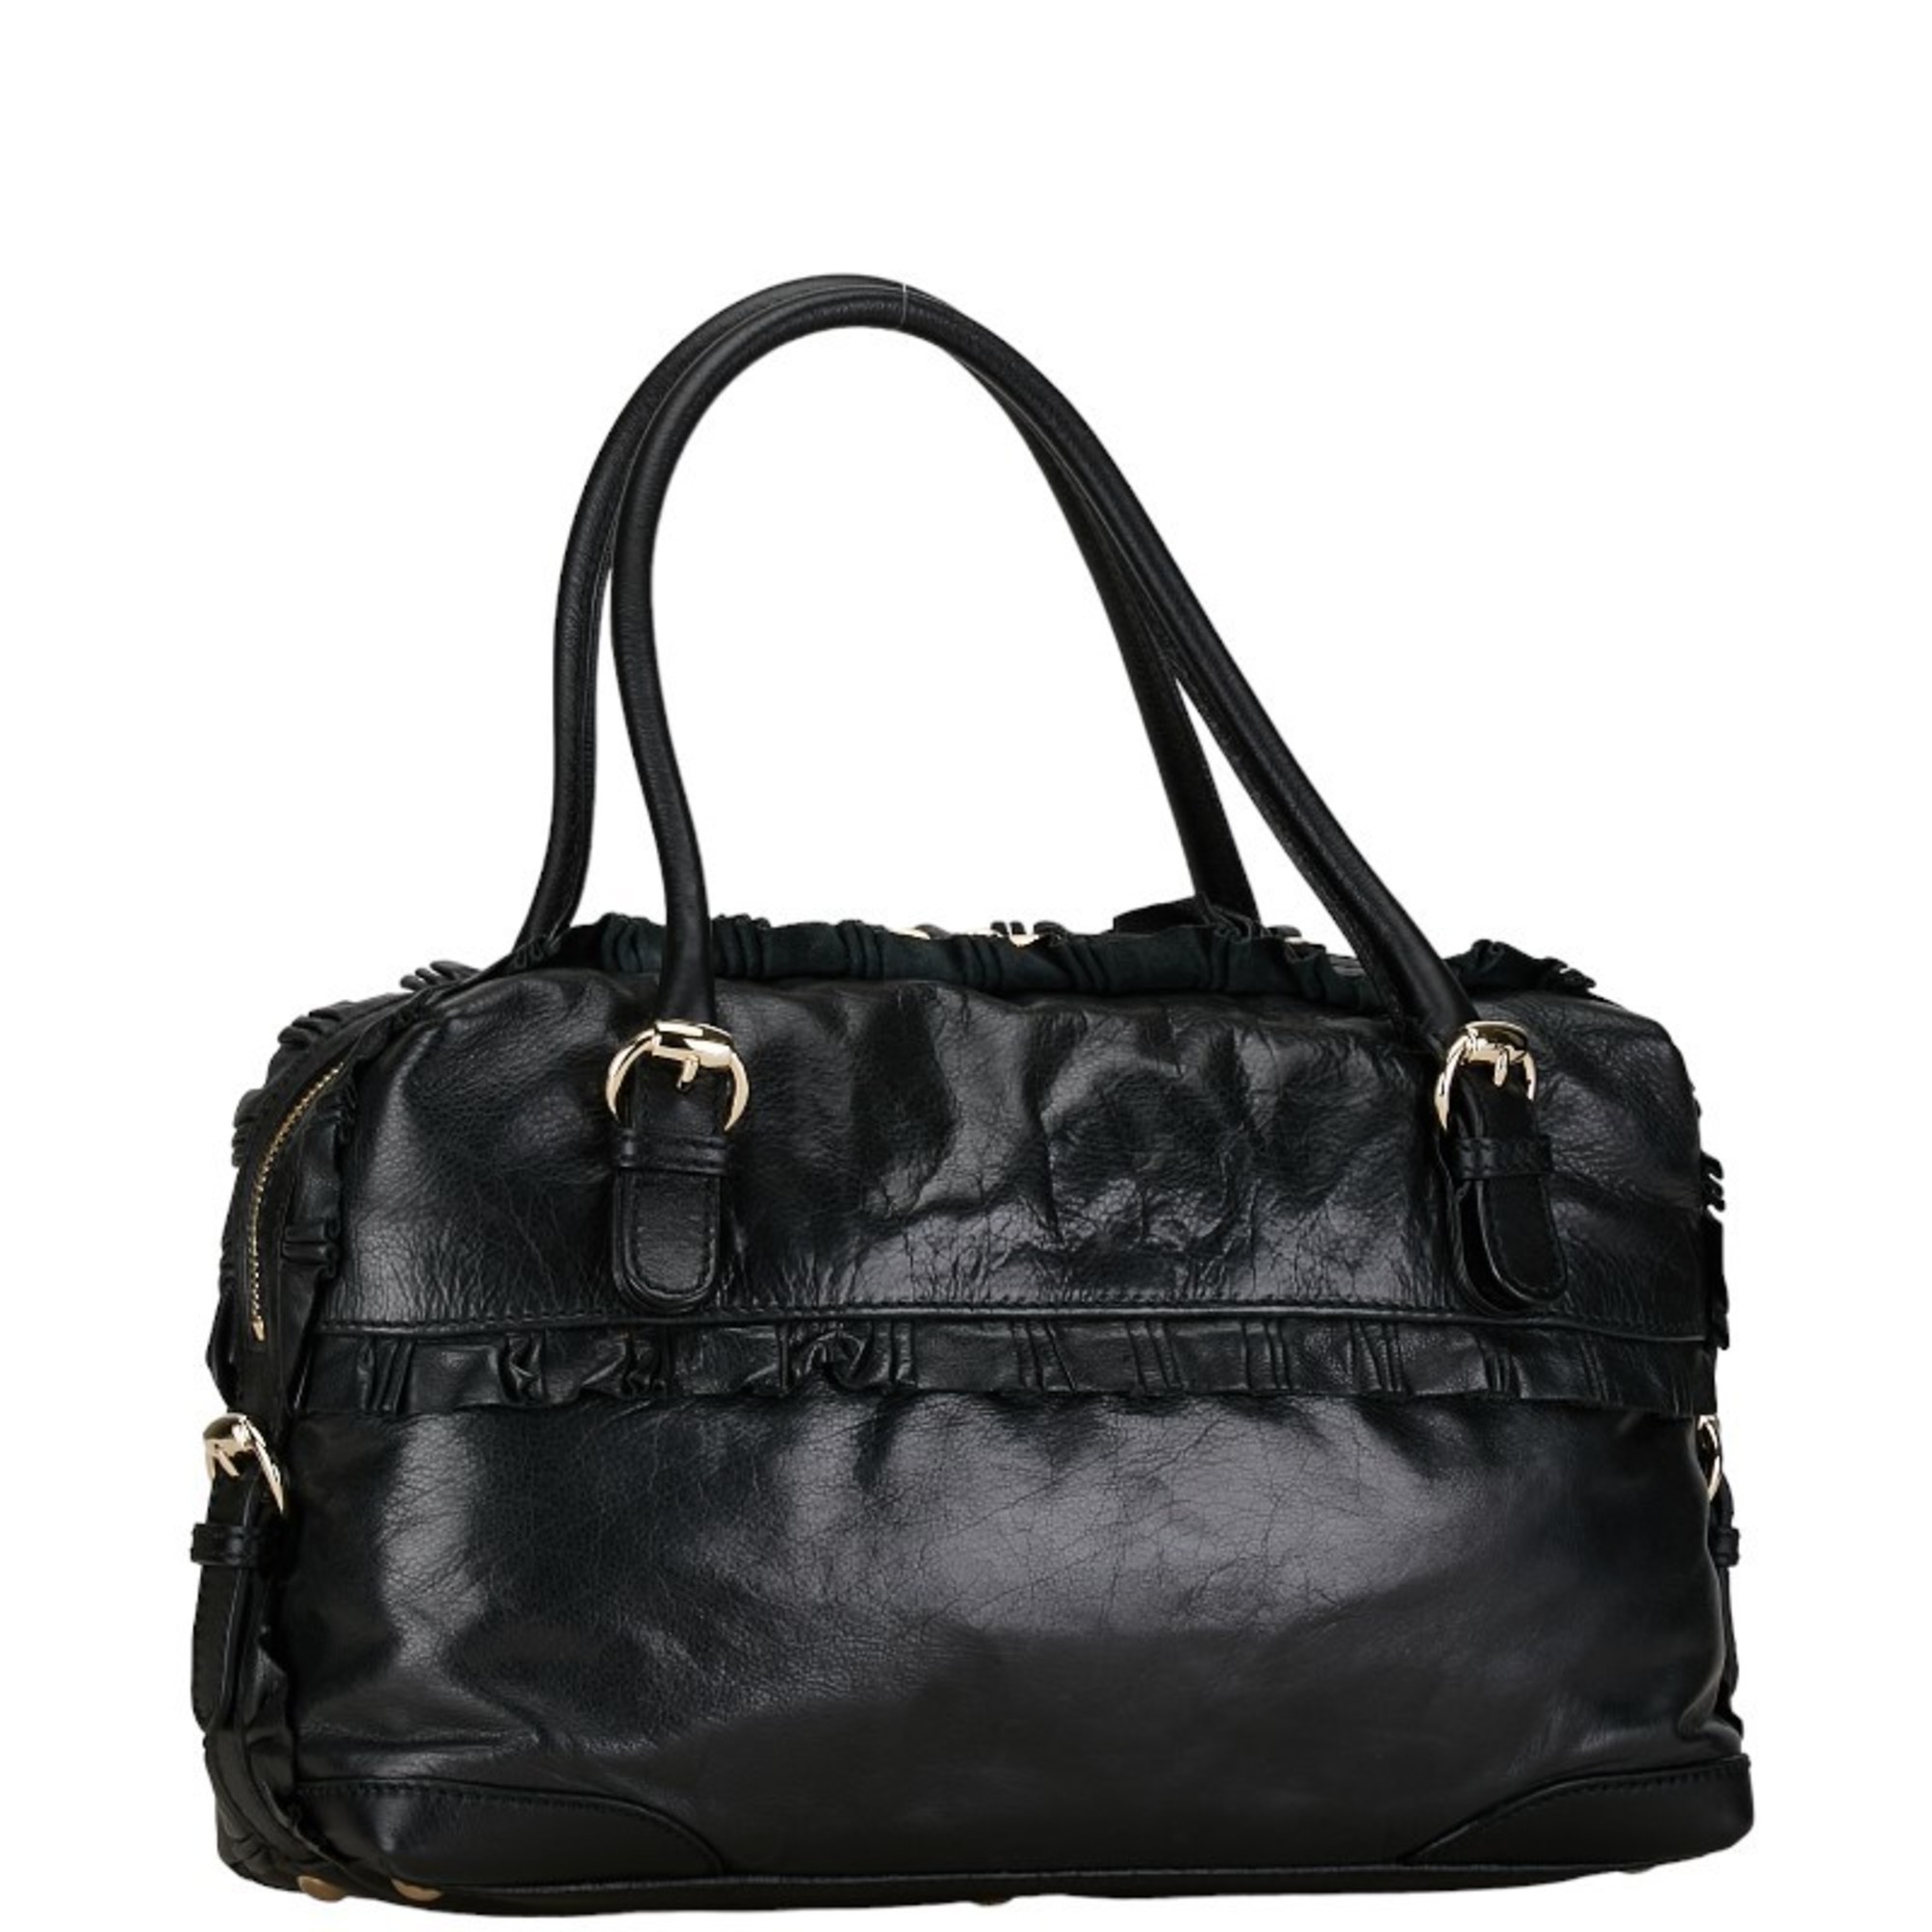 Gucci Ruffle Handbag Tote Bag 189848 Black Silver Leather Women's GUCCI